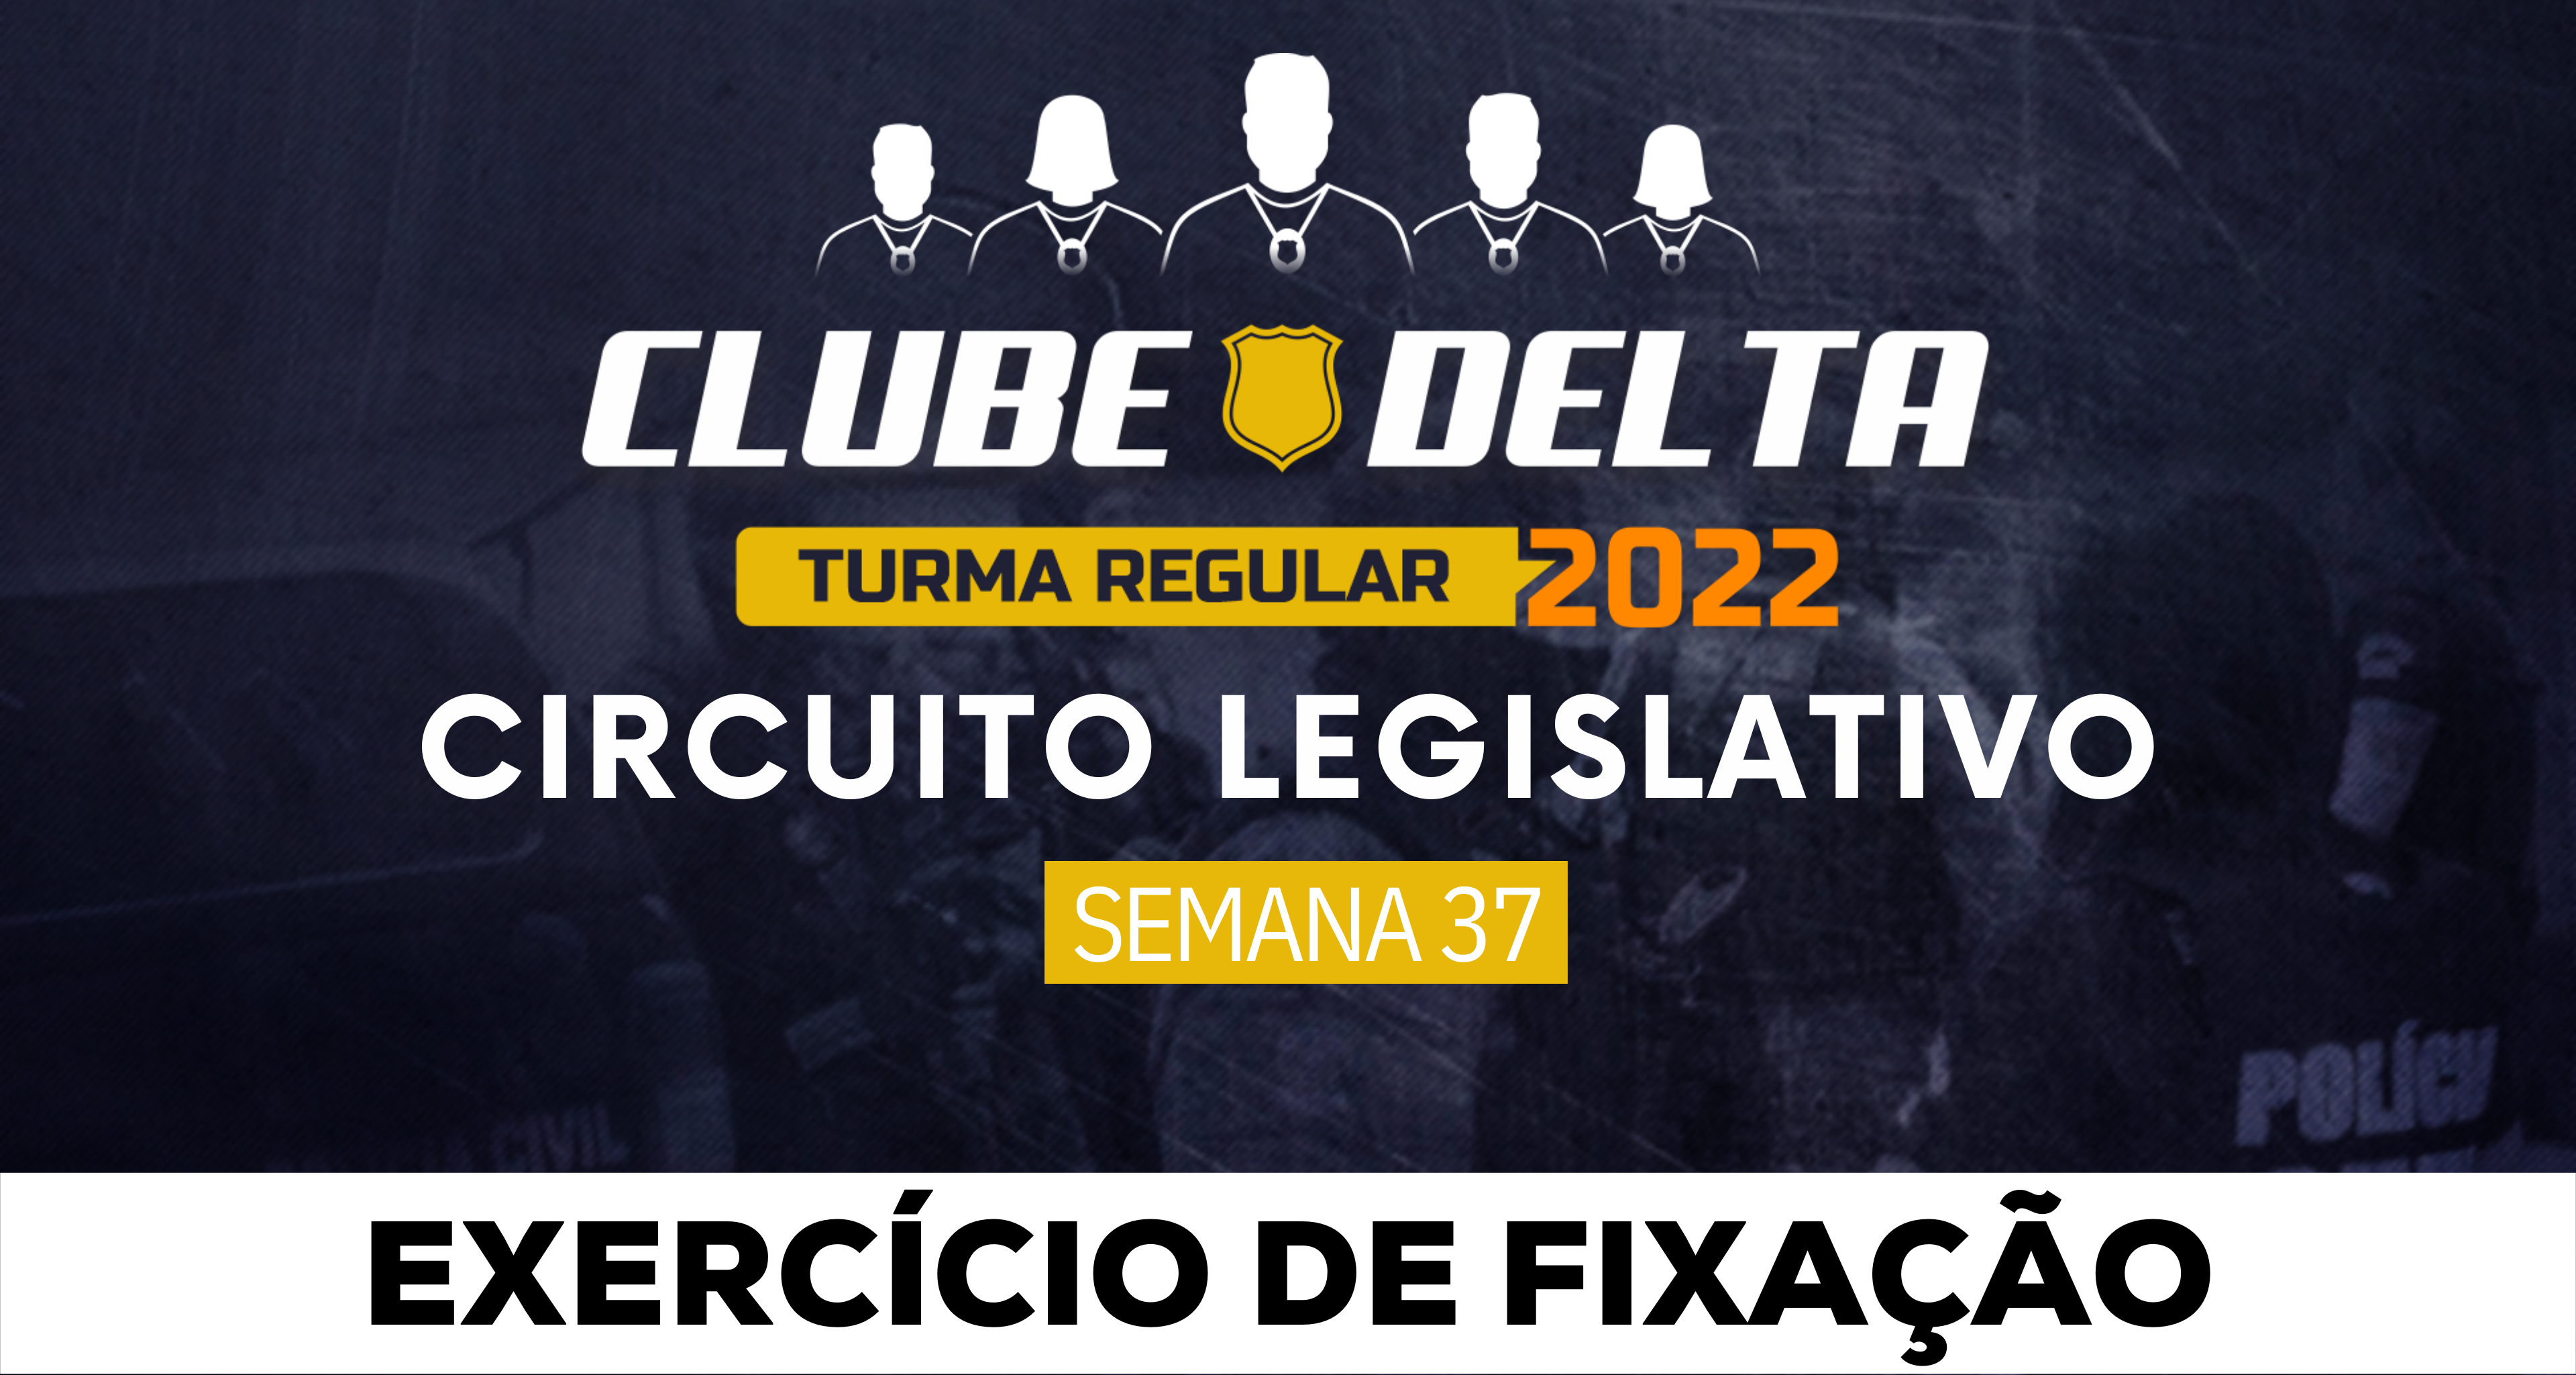 Circuito Legislativo 2022.1 (Clube Delta - Semana 37)